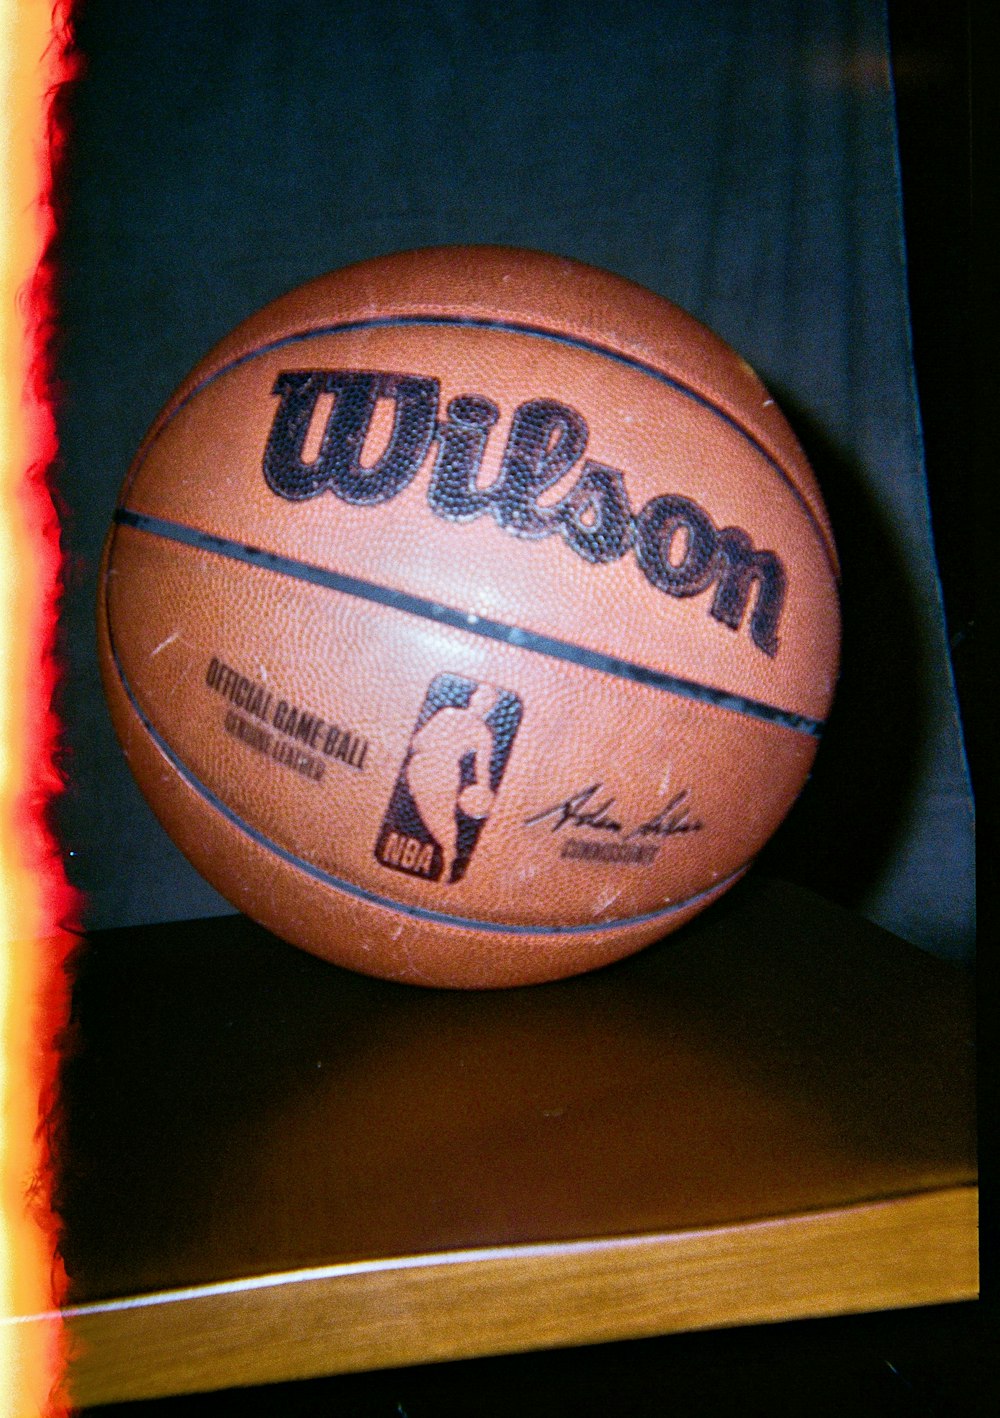 a close up of a basketball on a shelf